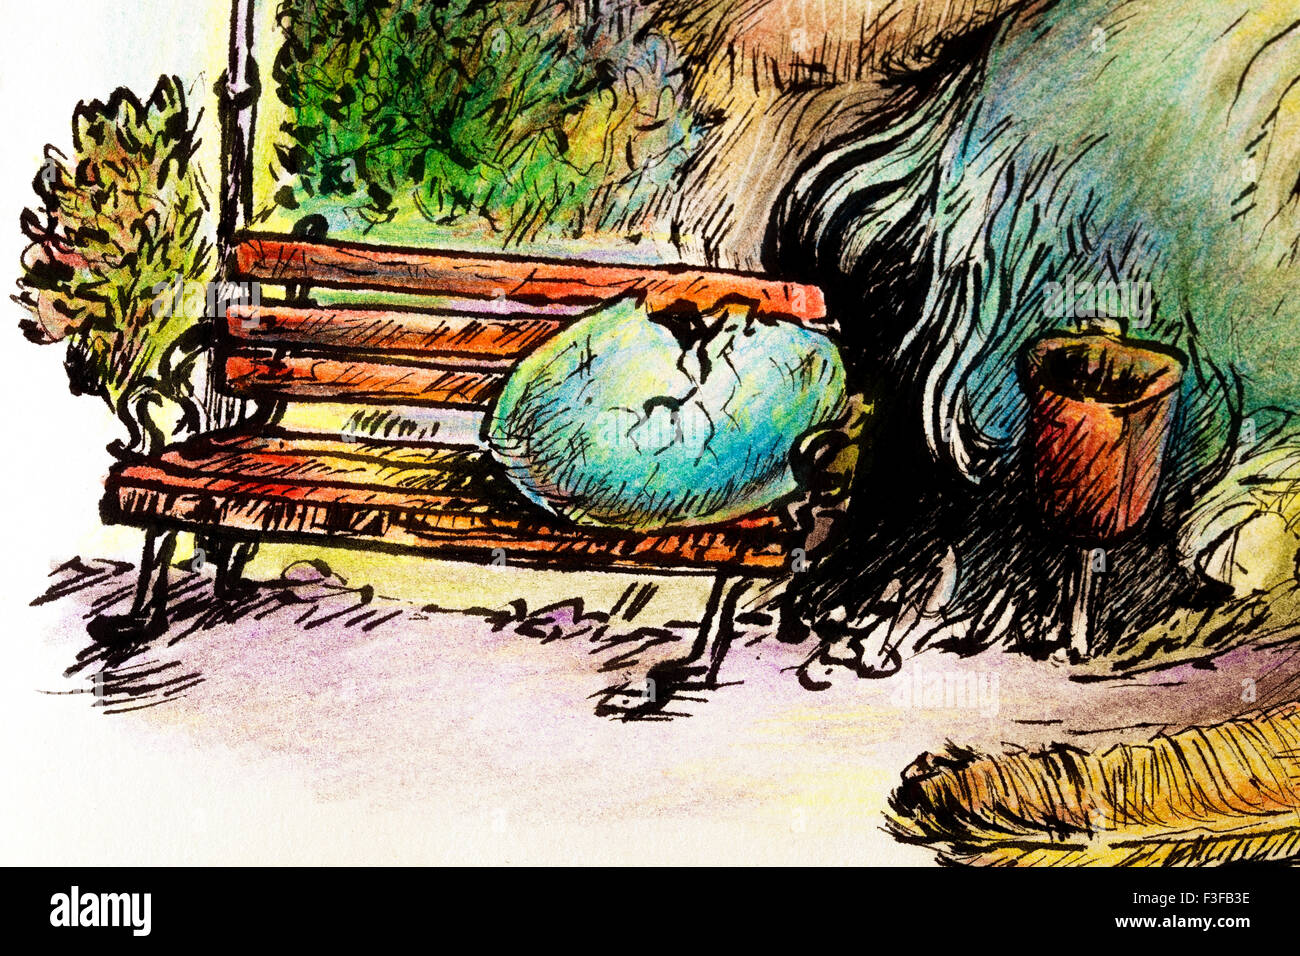 Illustrazione surrealista di uno sciamano di cova cercando di piacere un gigantesco parco degli uccelli, dettaglio di un uovo, banco e cestino, detaile Foto Stock